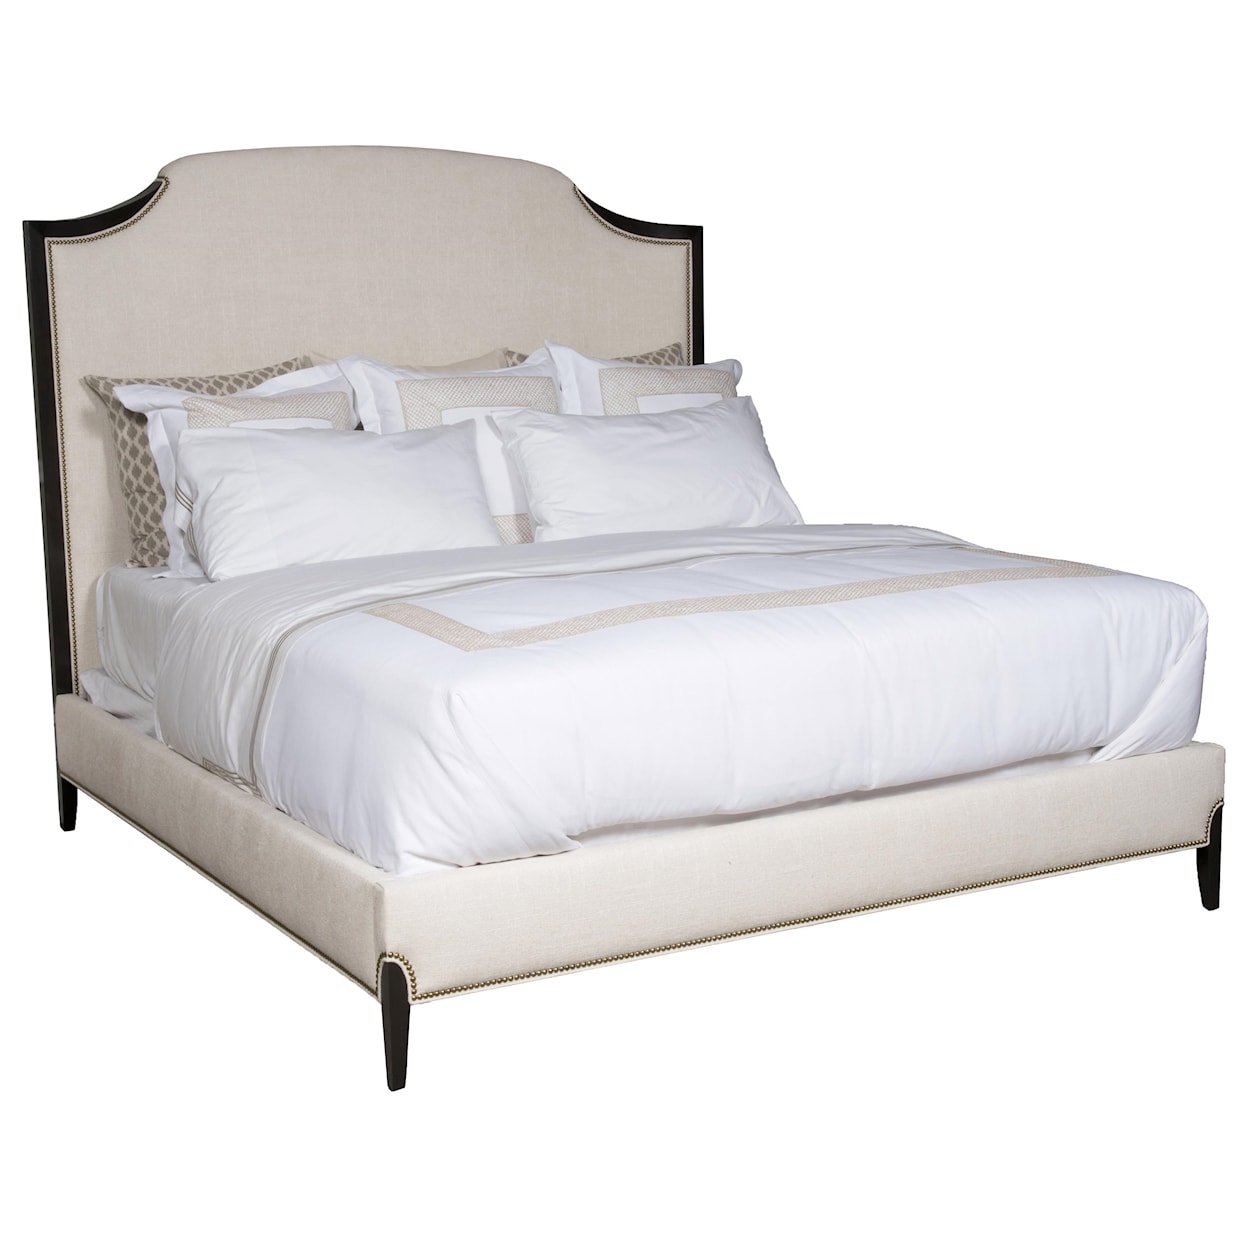 Vanguard Furniture Lillet Bedroom Queen Upholstered Bed